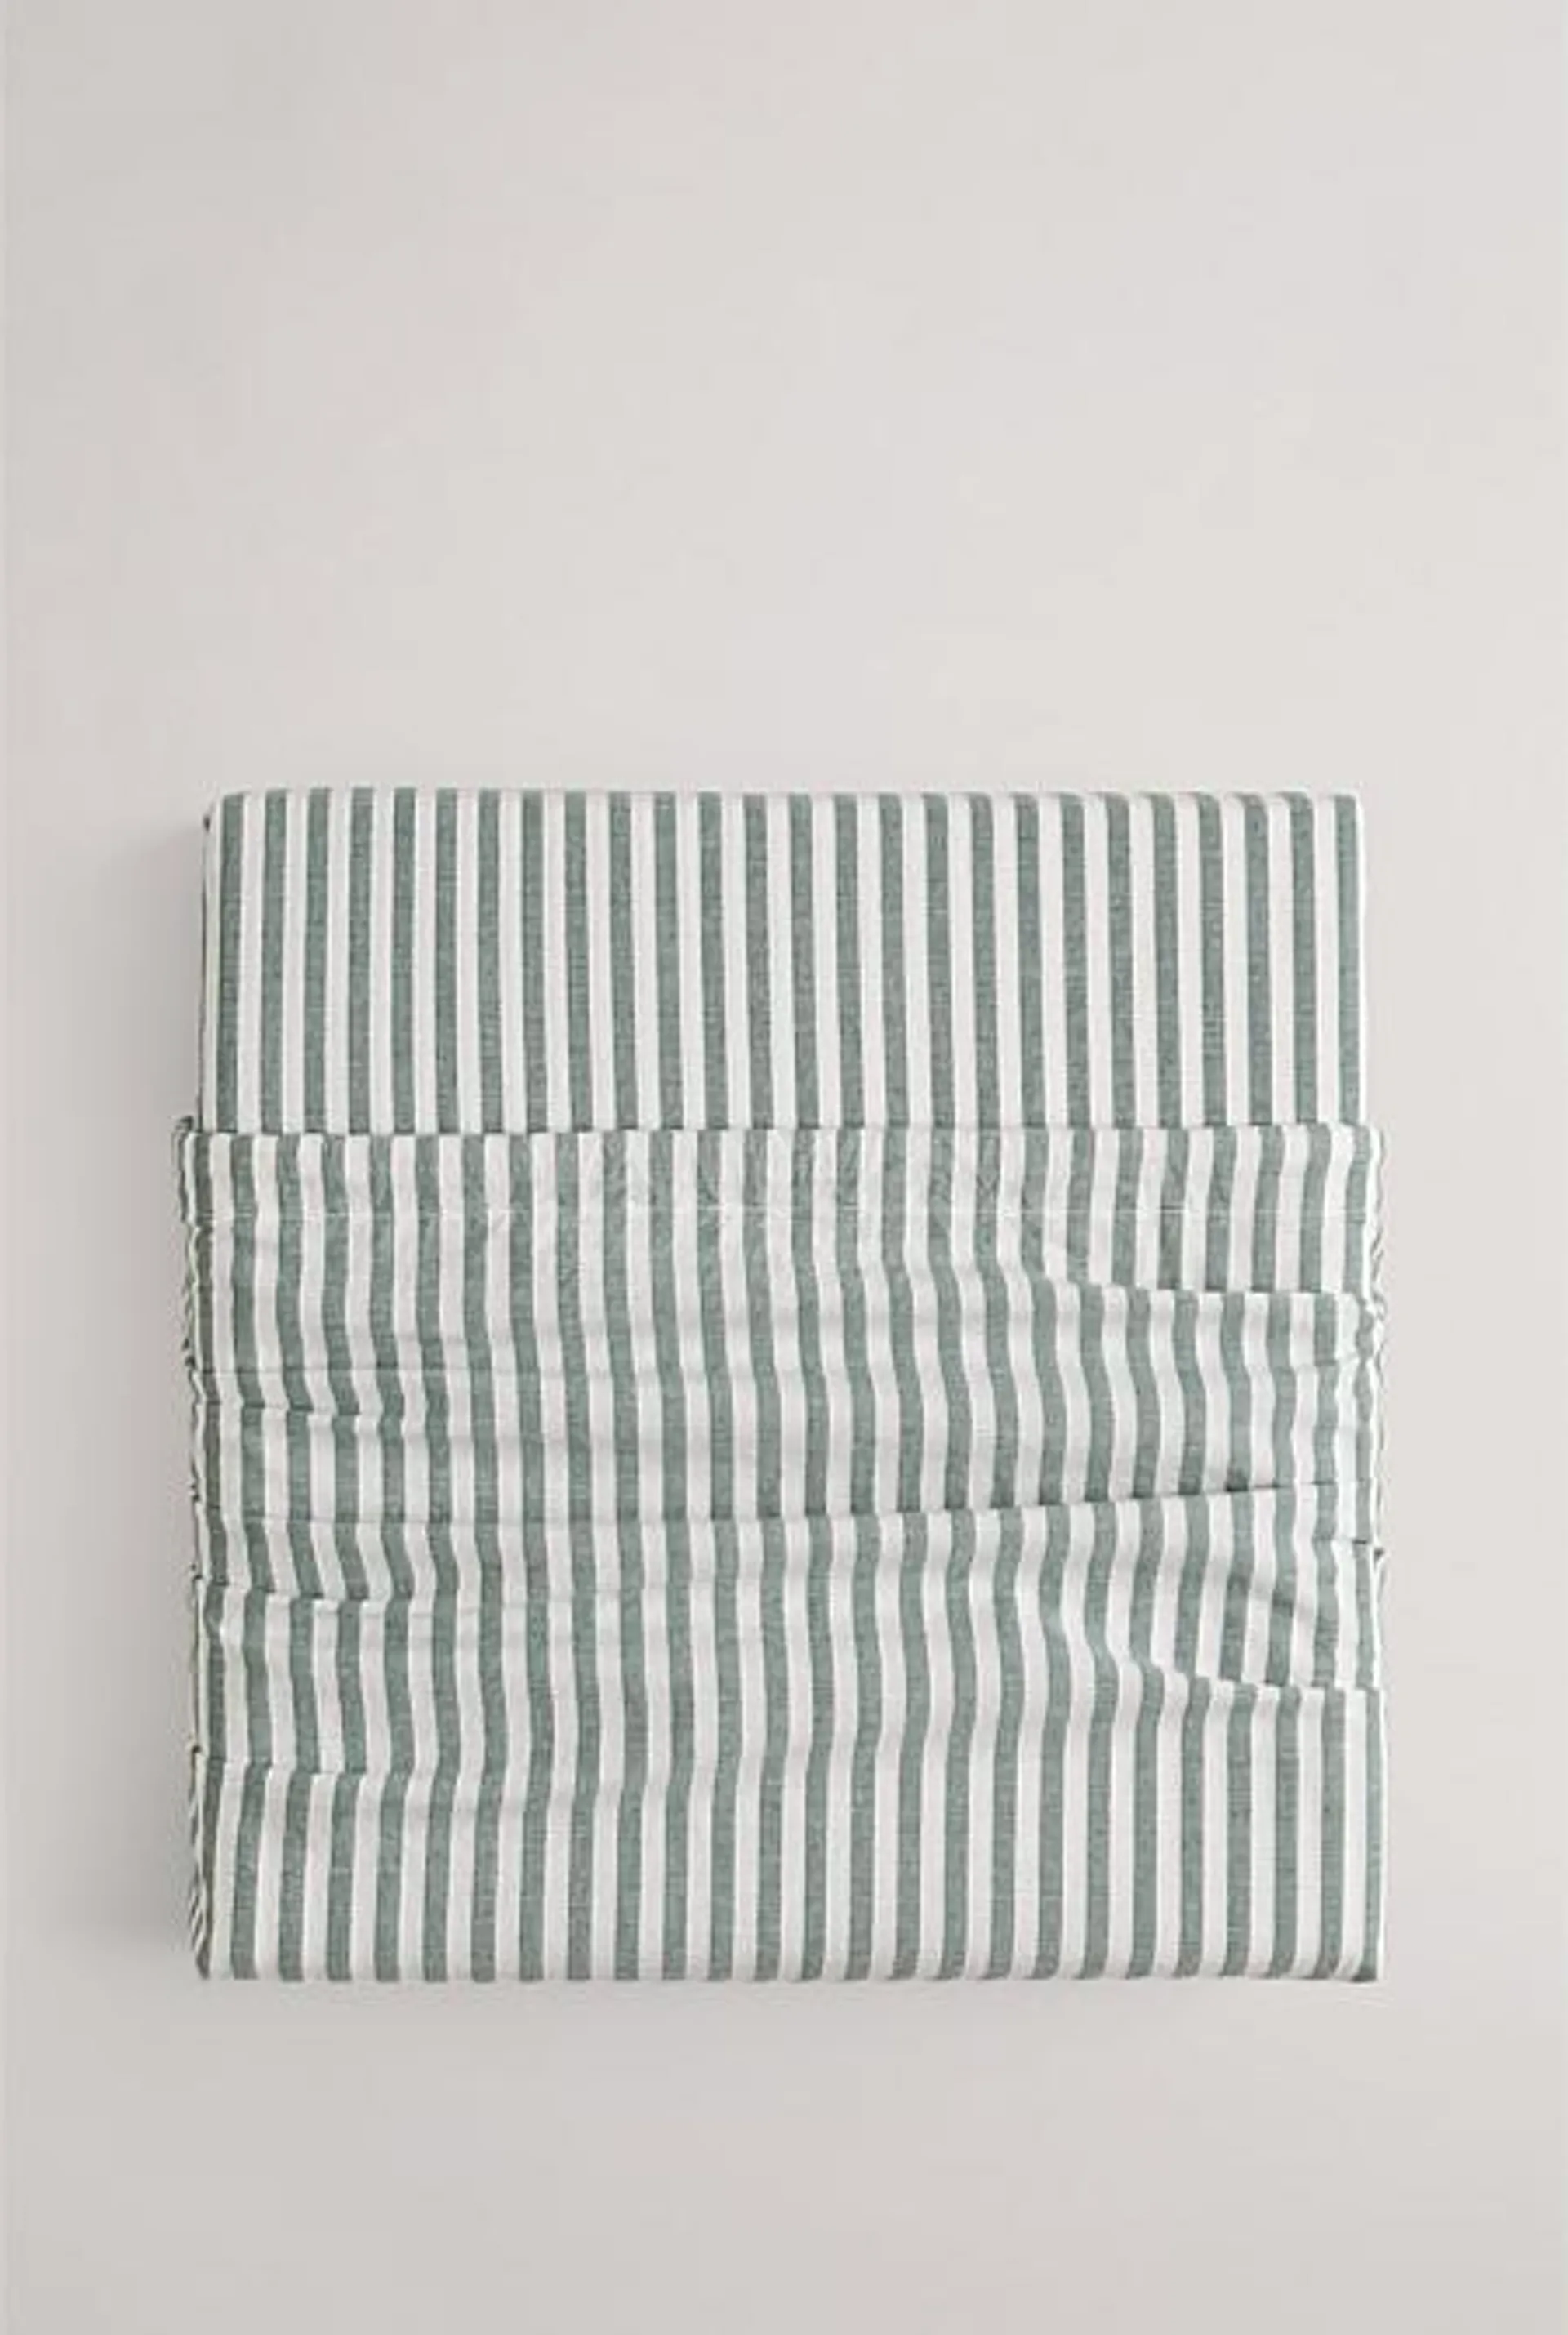 Brae Australian Cotton Stripe Double Quilt Cover